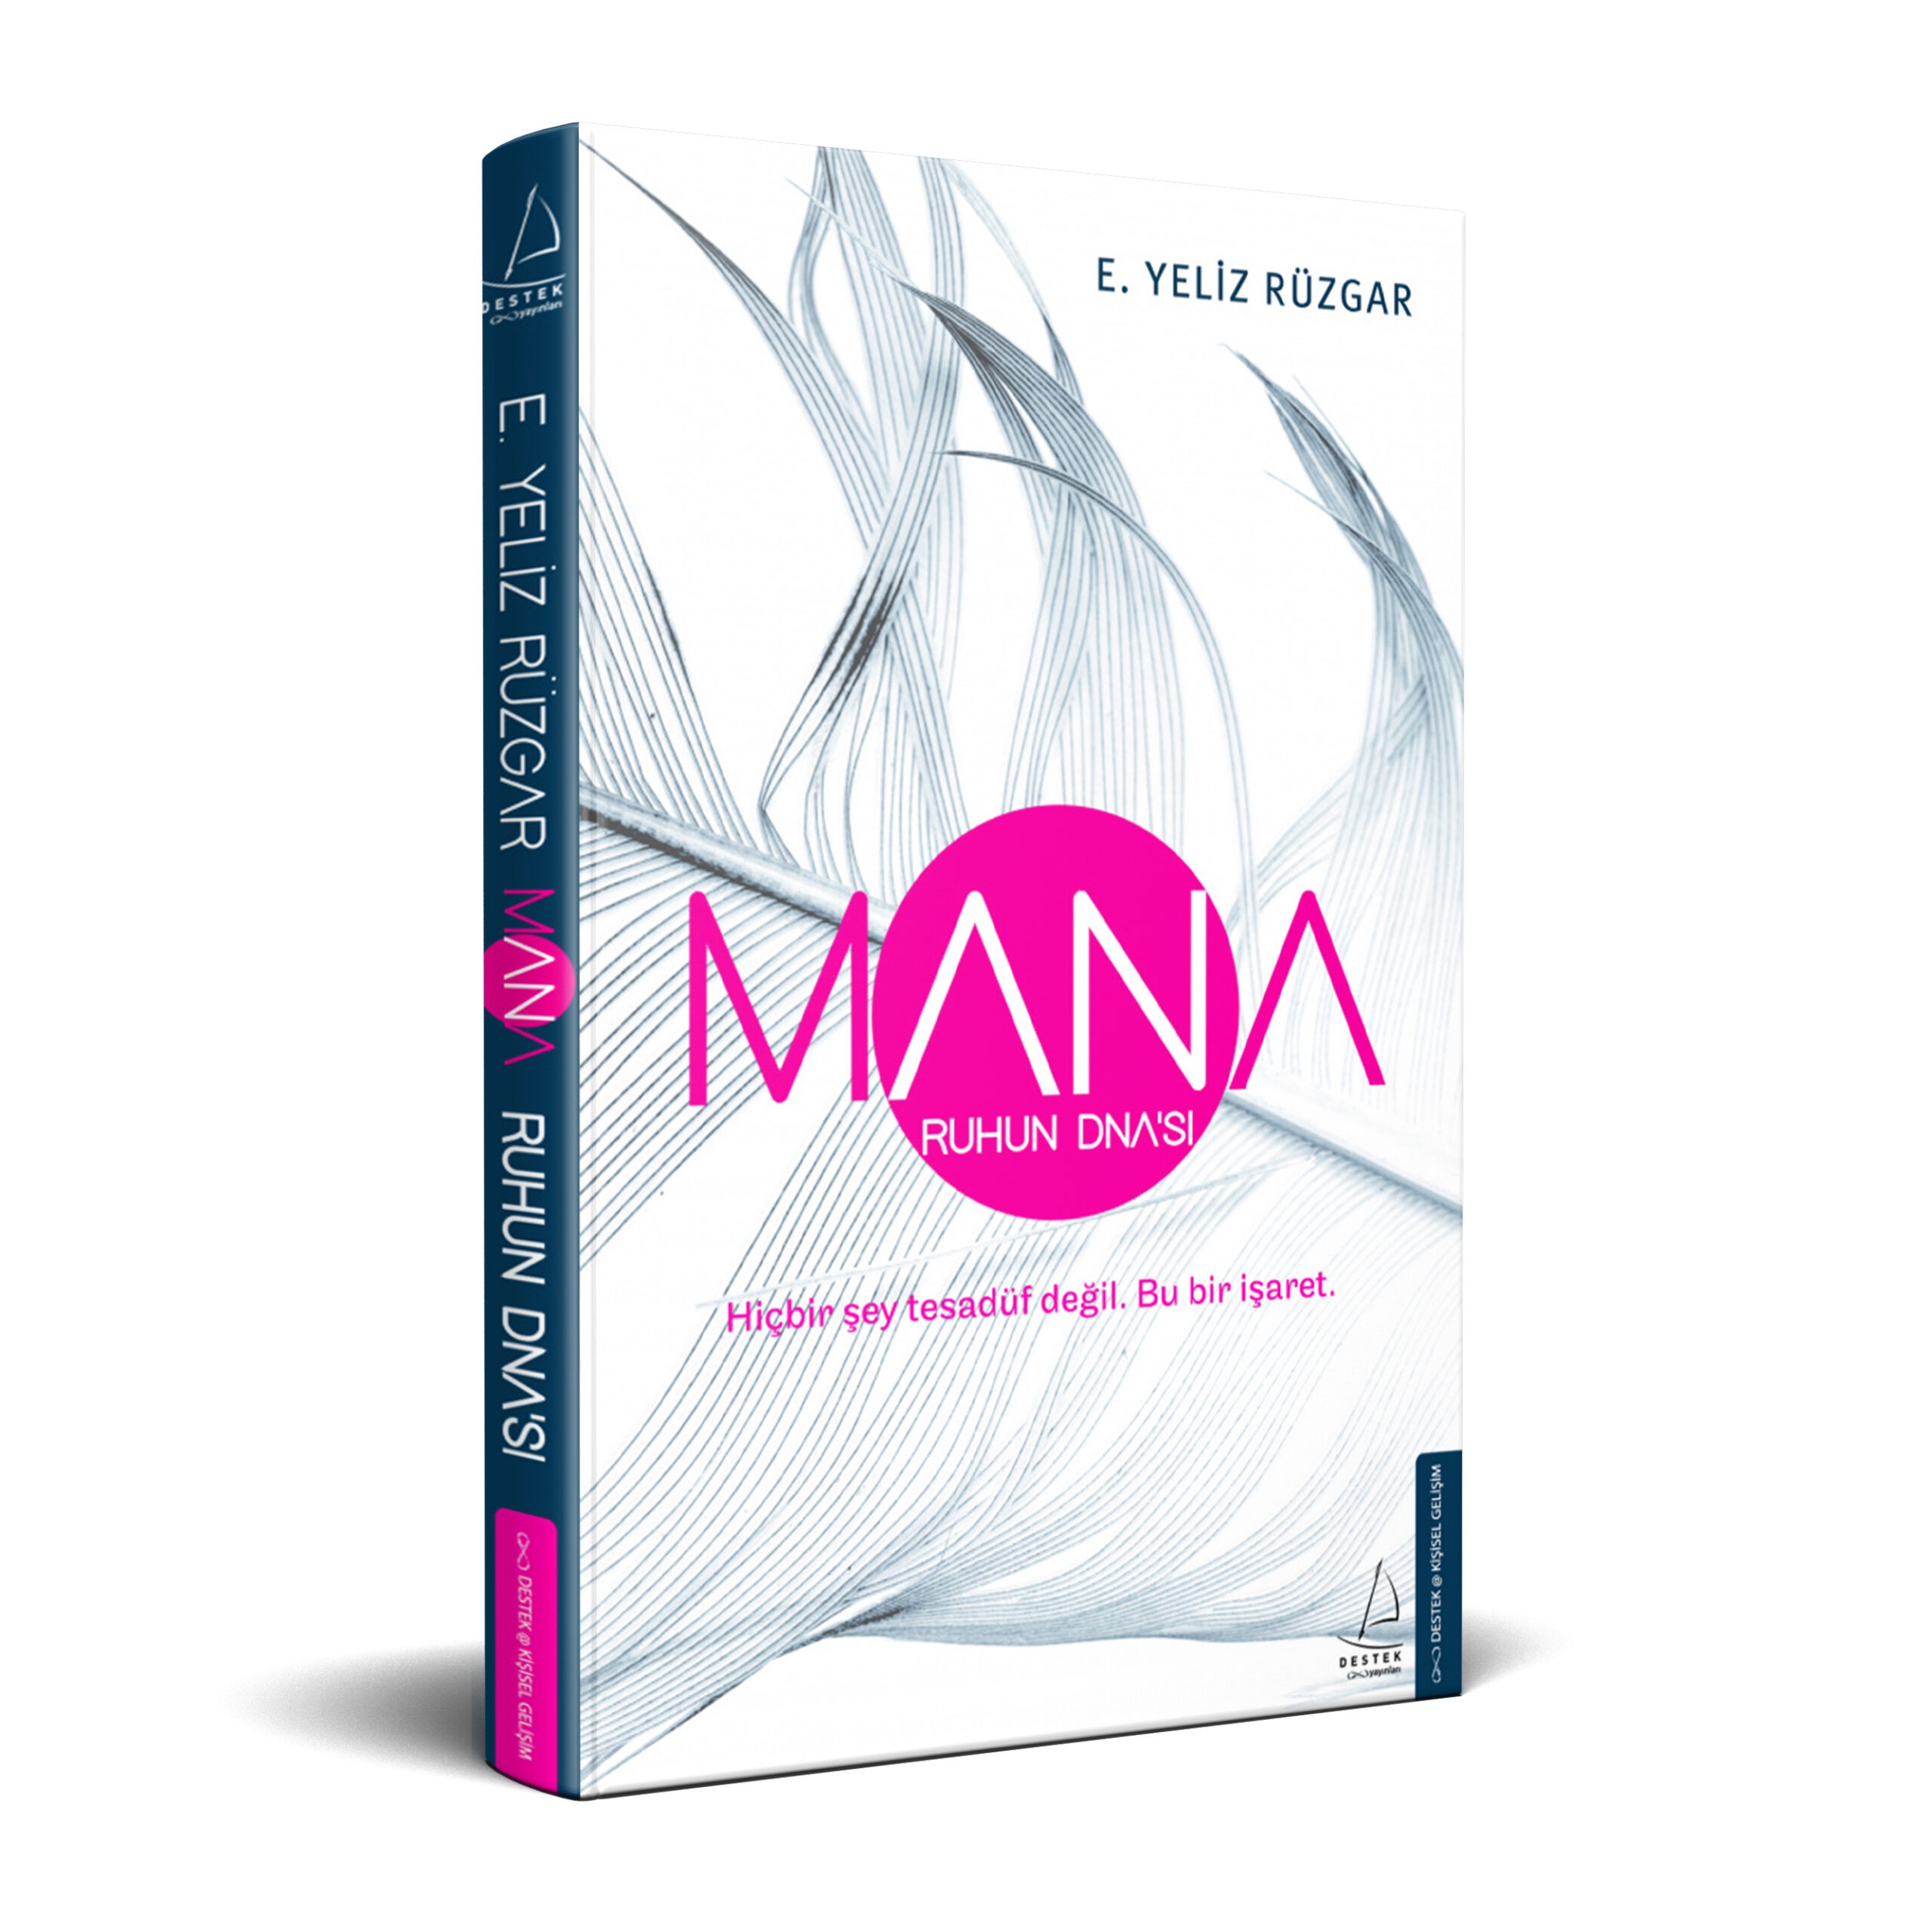 ‘Yaşam Amacın DNA’da kodlu.” Uluslararası konuşmacı, yazar Yeliz Rüzgar’ın MANA-Ruhun DNA’sı kitabı raflarda.